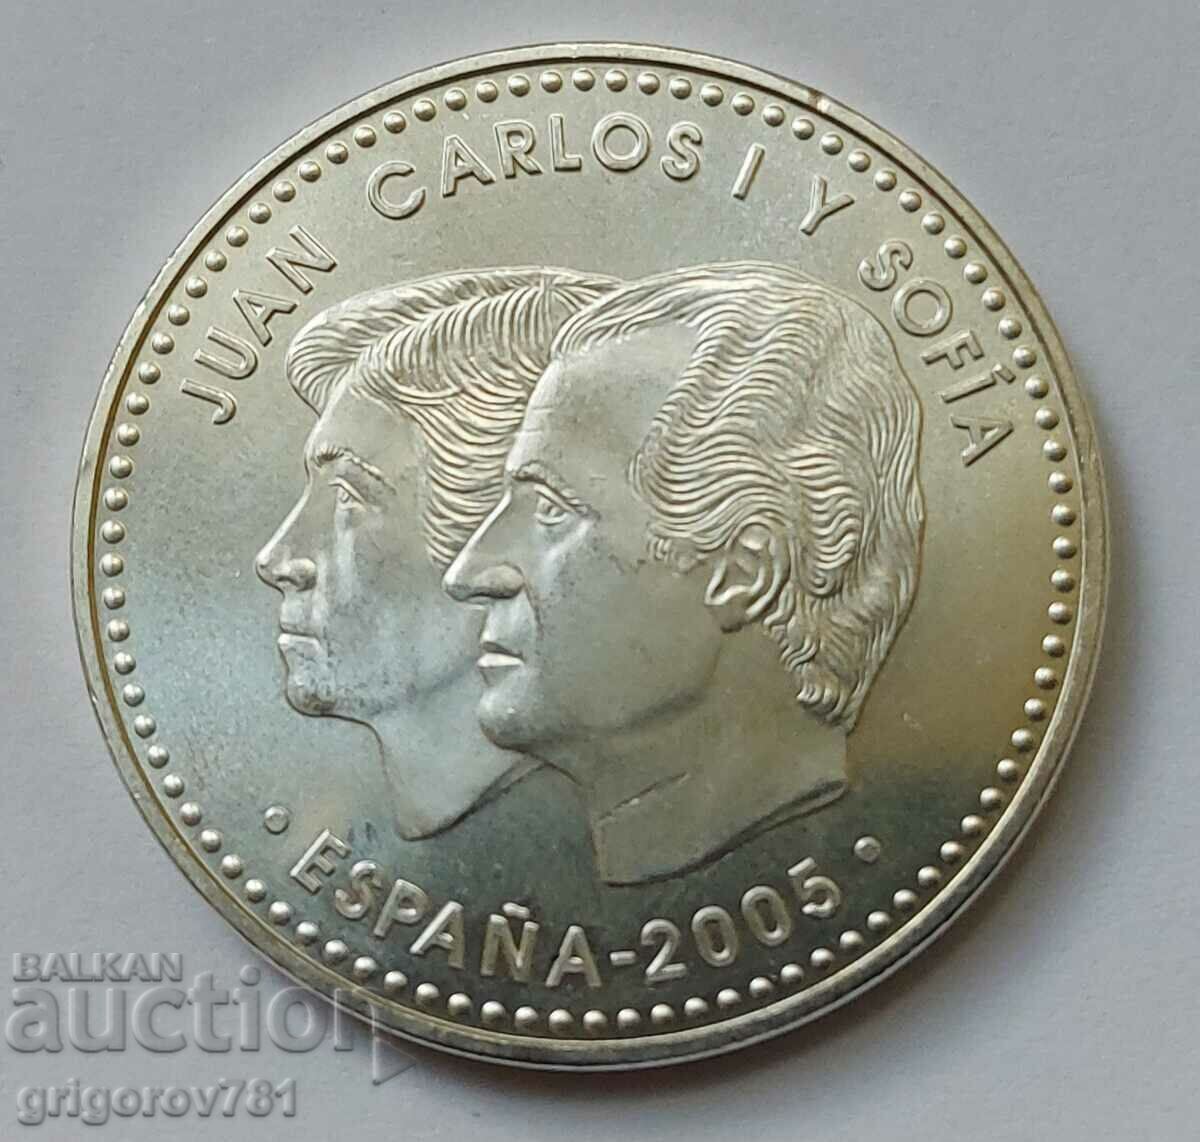 12 Euro Silver Spain 2005 - Silver Coin #1